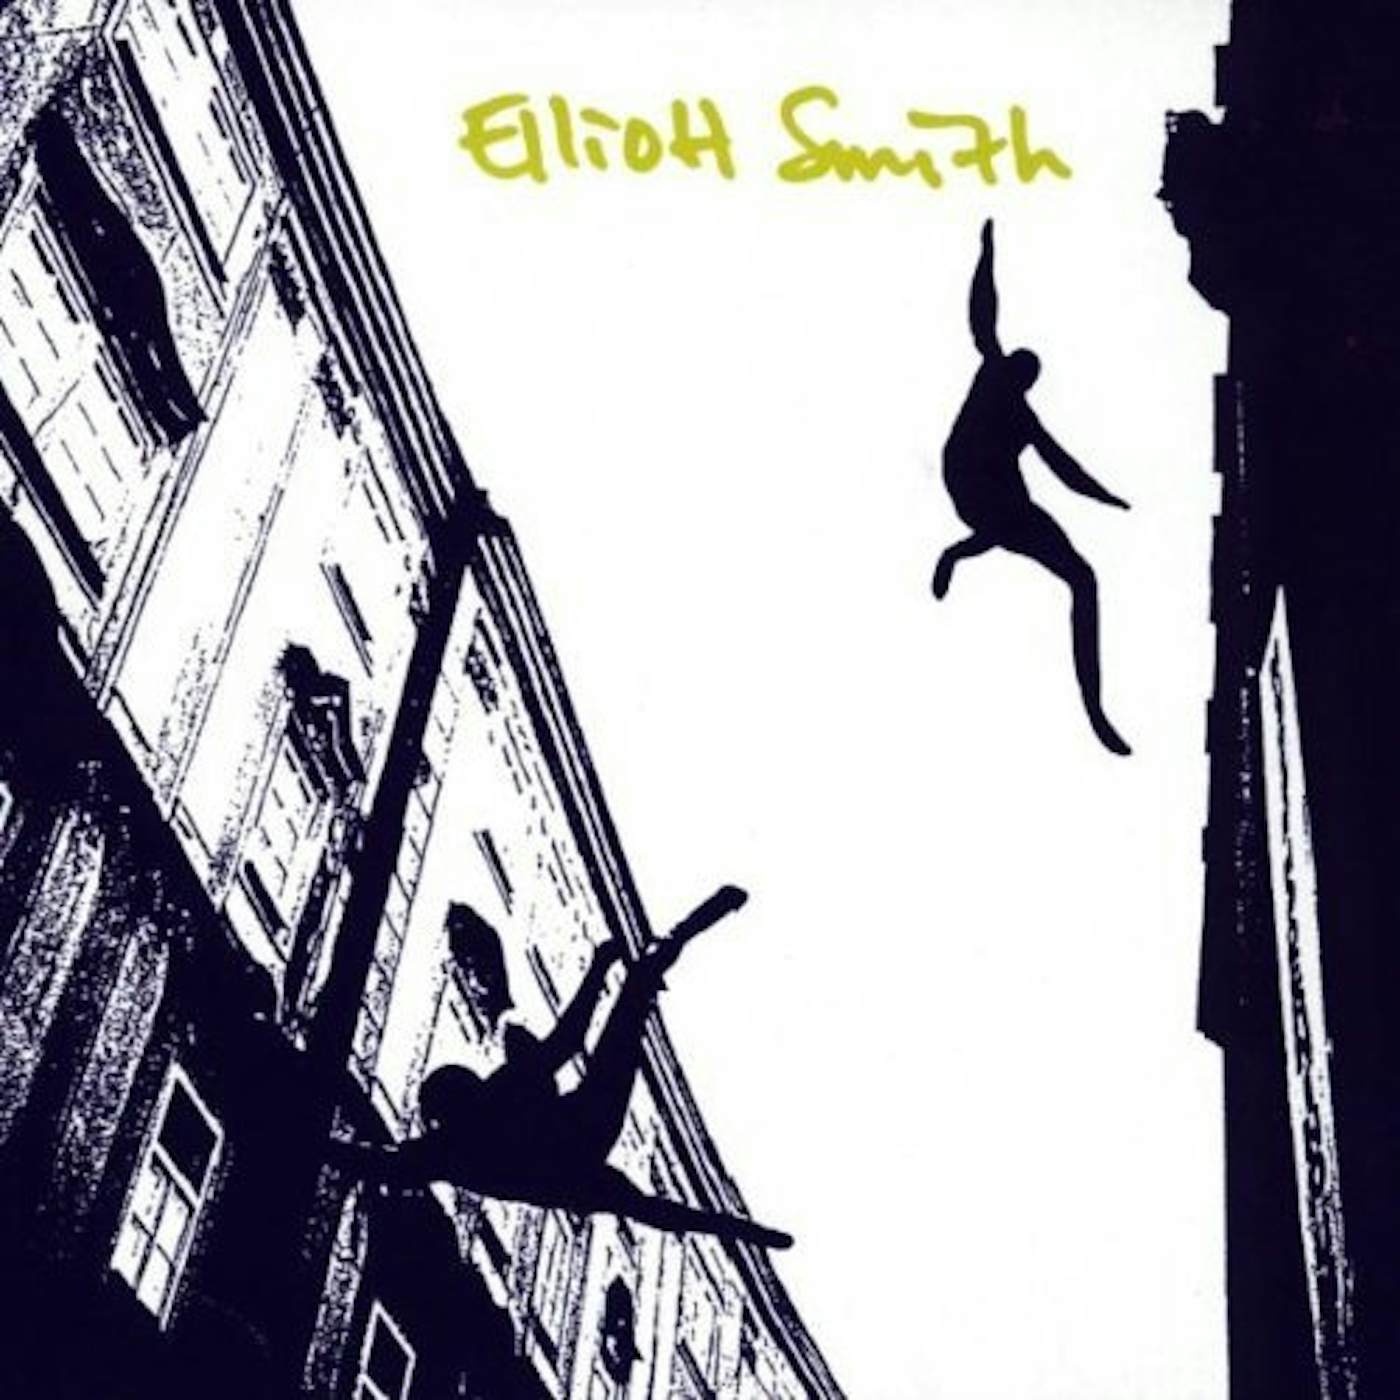 ELLIOTT SMITH CD